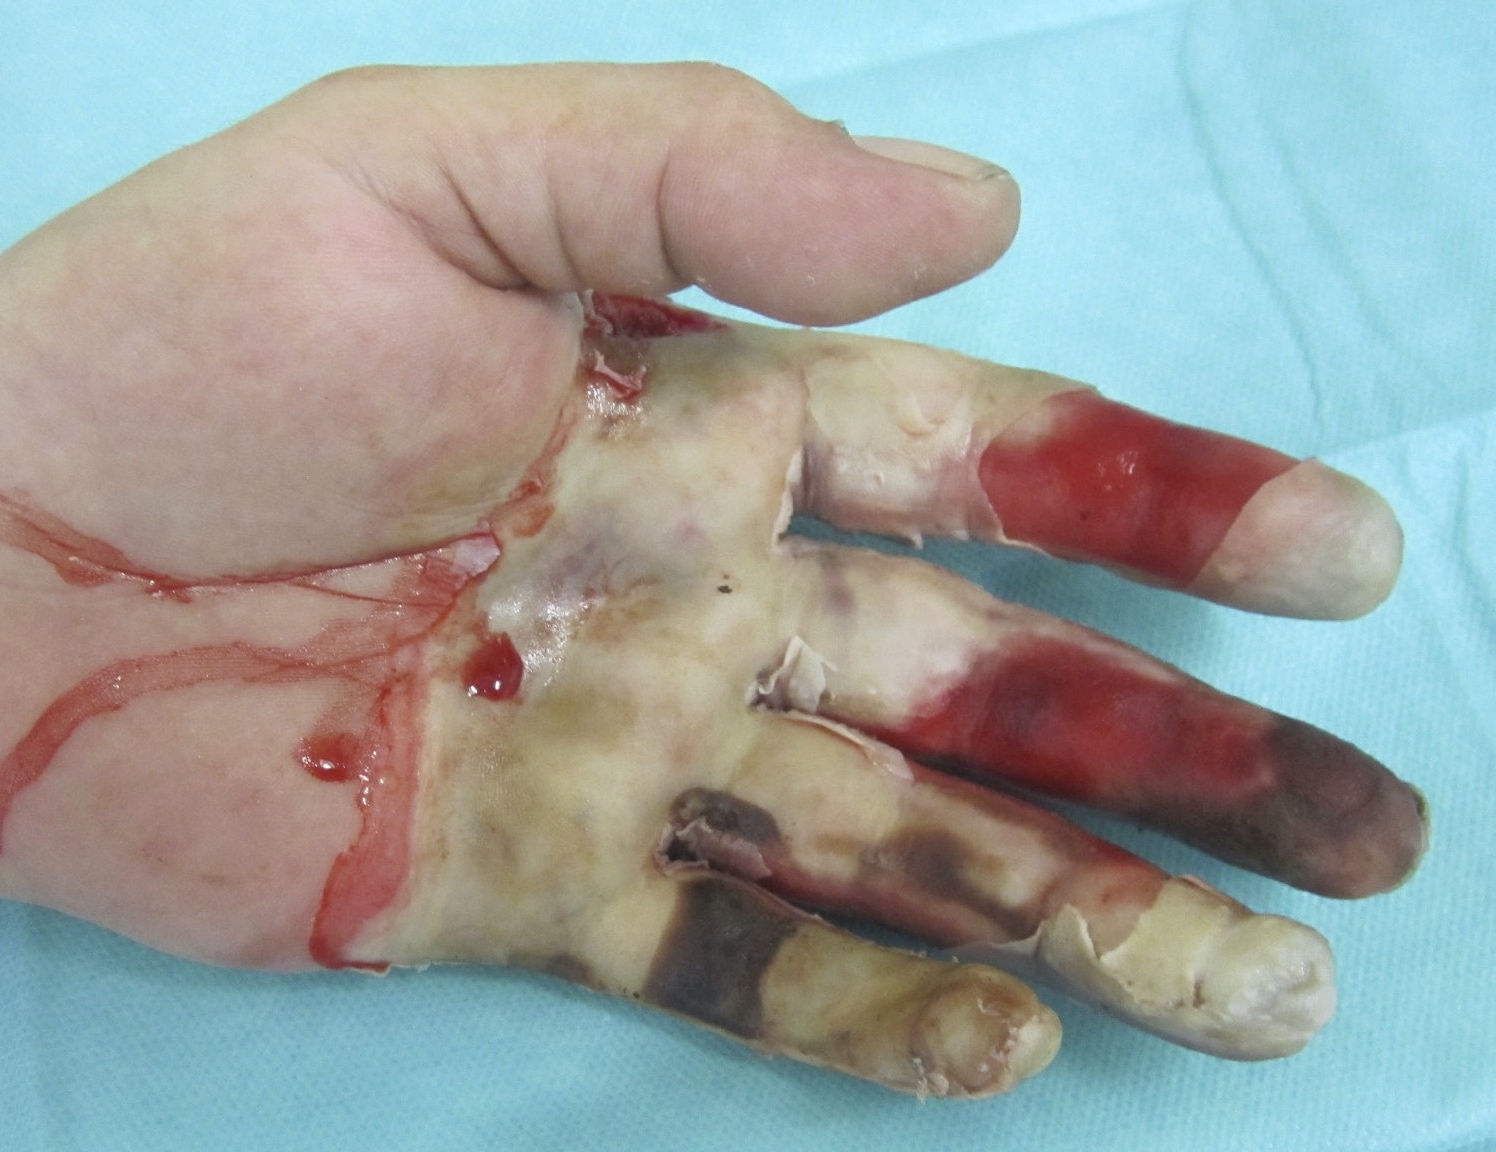 Skindot Indikation drittgradige Verbrennung linke palmare Handinnenfläche und Finger